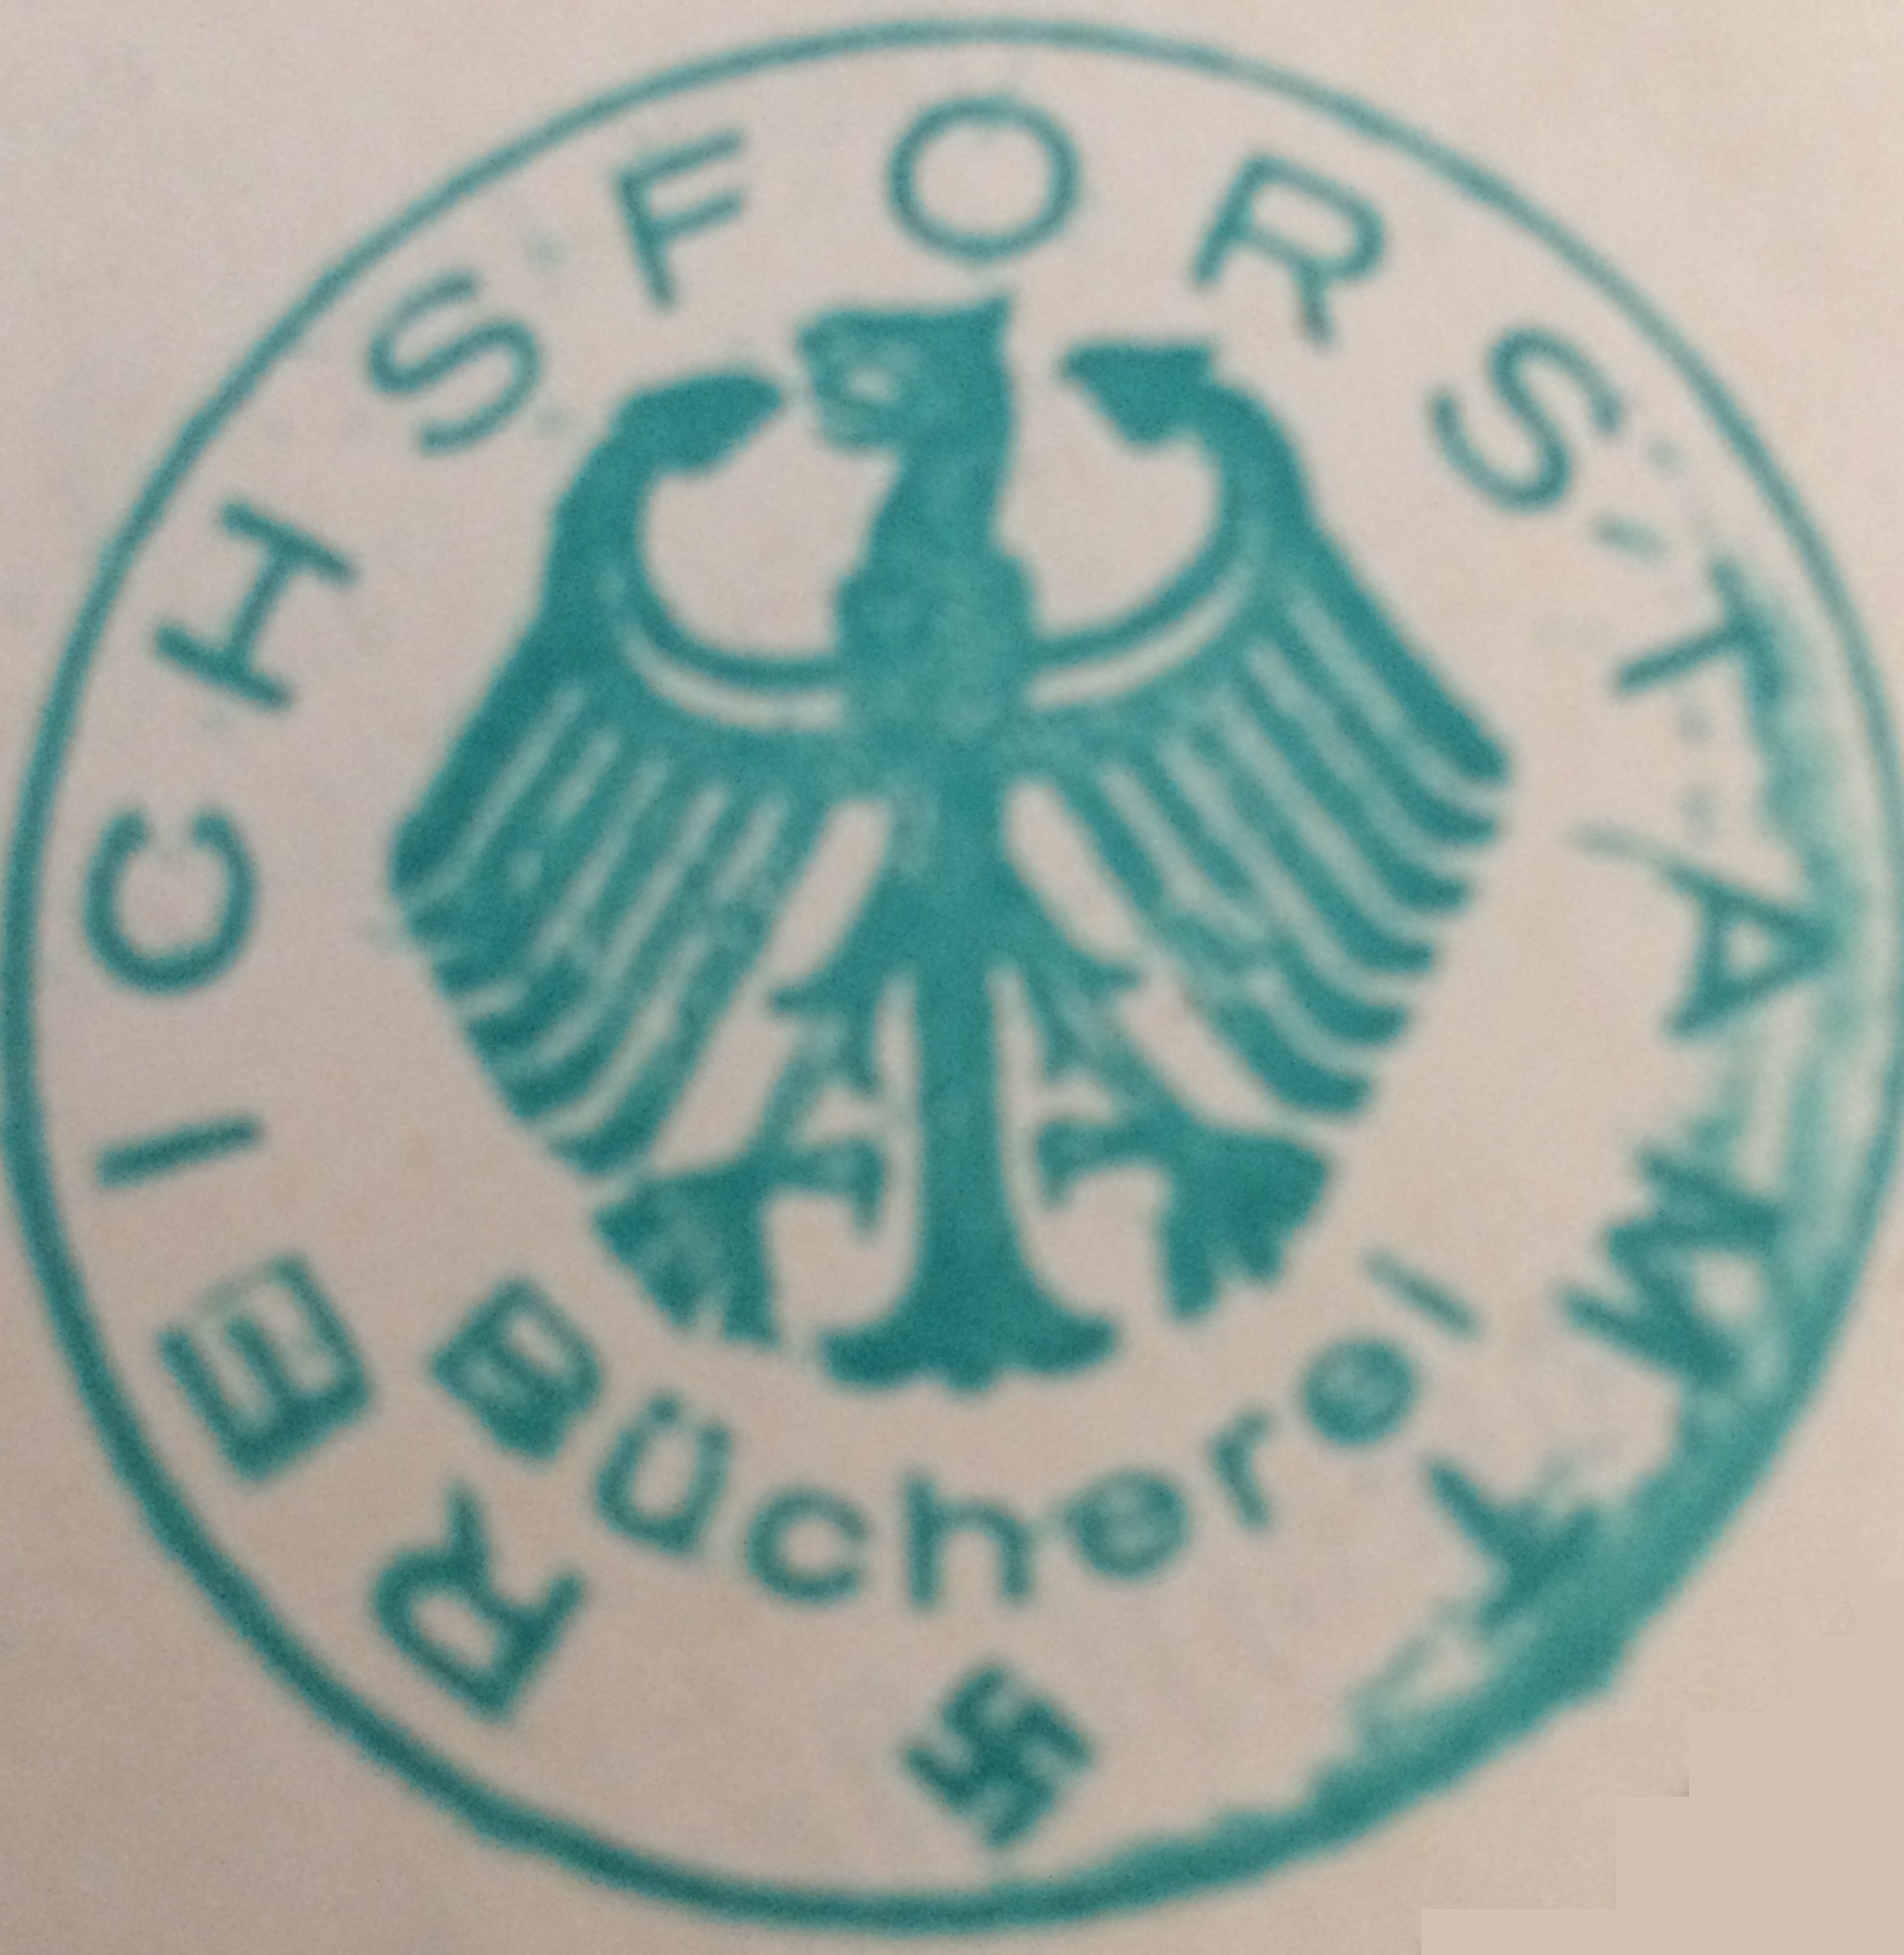 Bücherei Reichsforstamt (Библиотека единой службы лесничества Германии)